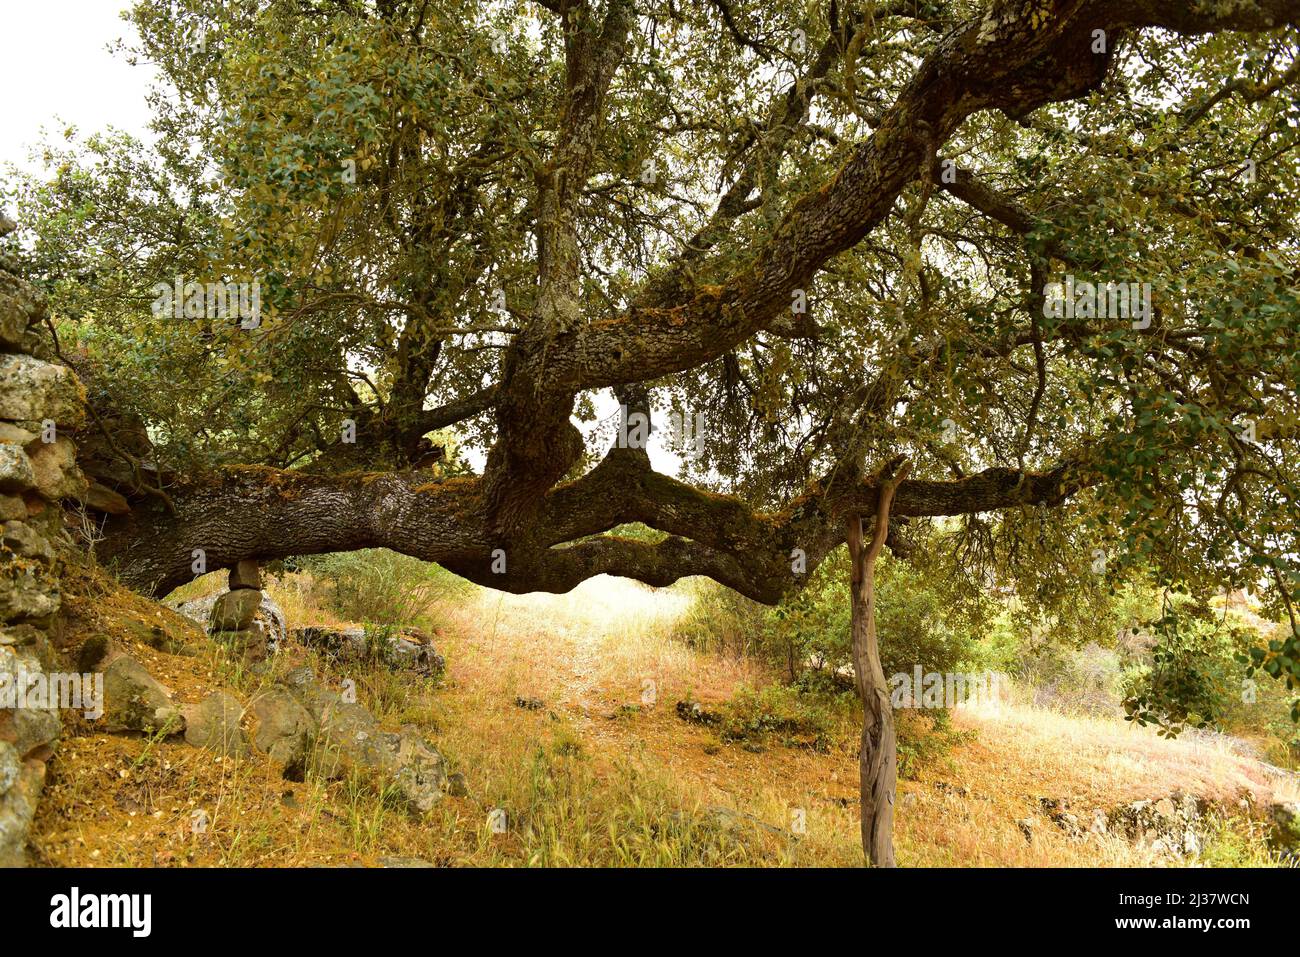 Le chêne d'Evergreen (Quercus ilex ballota ou Quercus ilex rotundifolia) est un arbre à feuilles persistantes originaire du bassin méditerranéen (péninsule ibérique et Banque D'Images